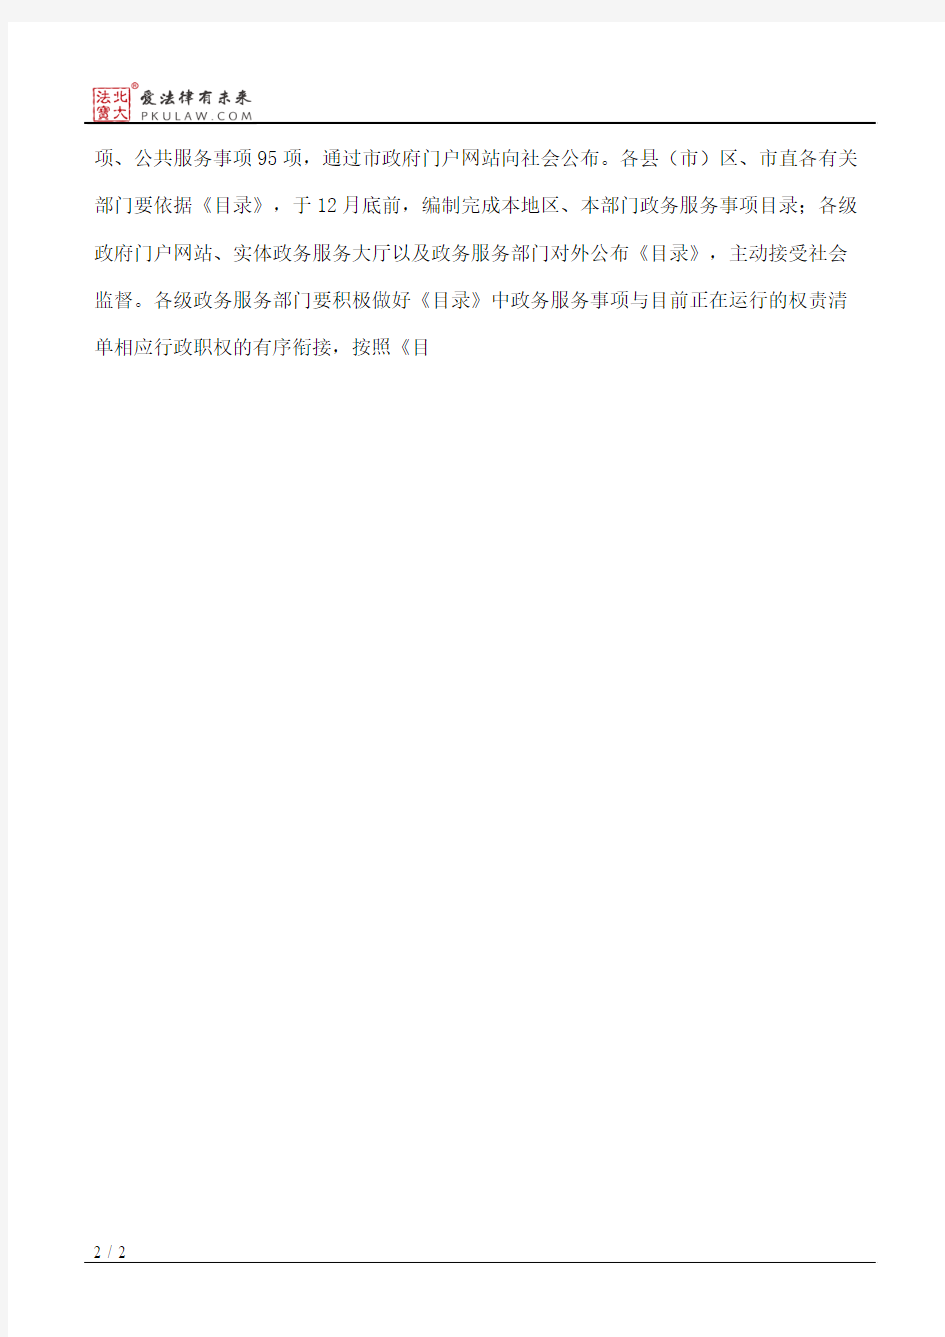 辽阳市人民政府关于公布辽阳市政务服务事项目录的通知